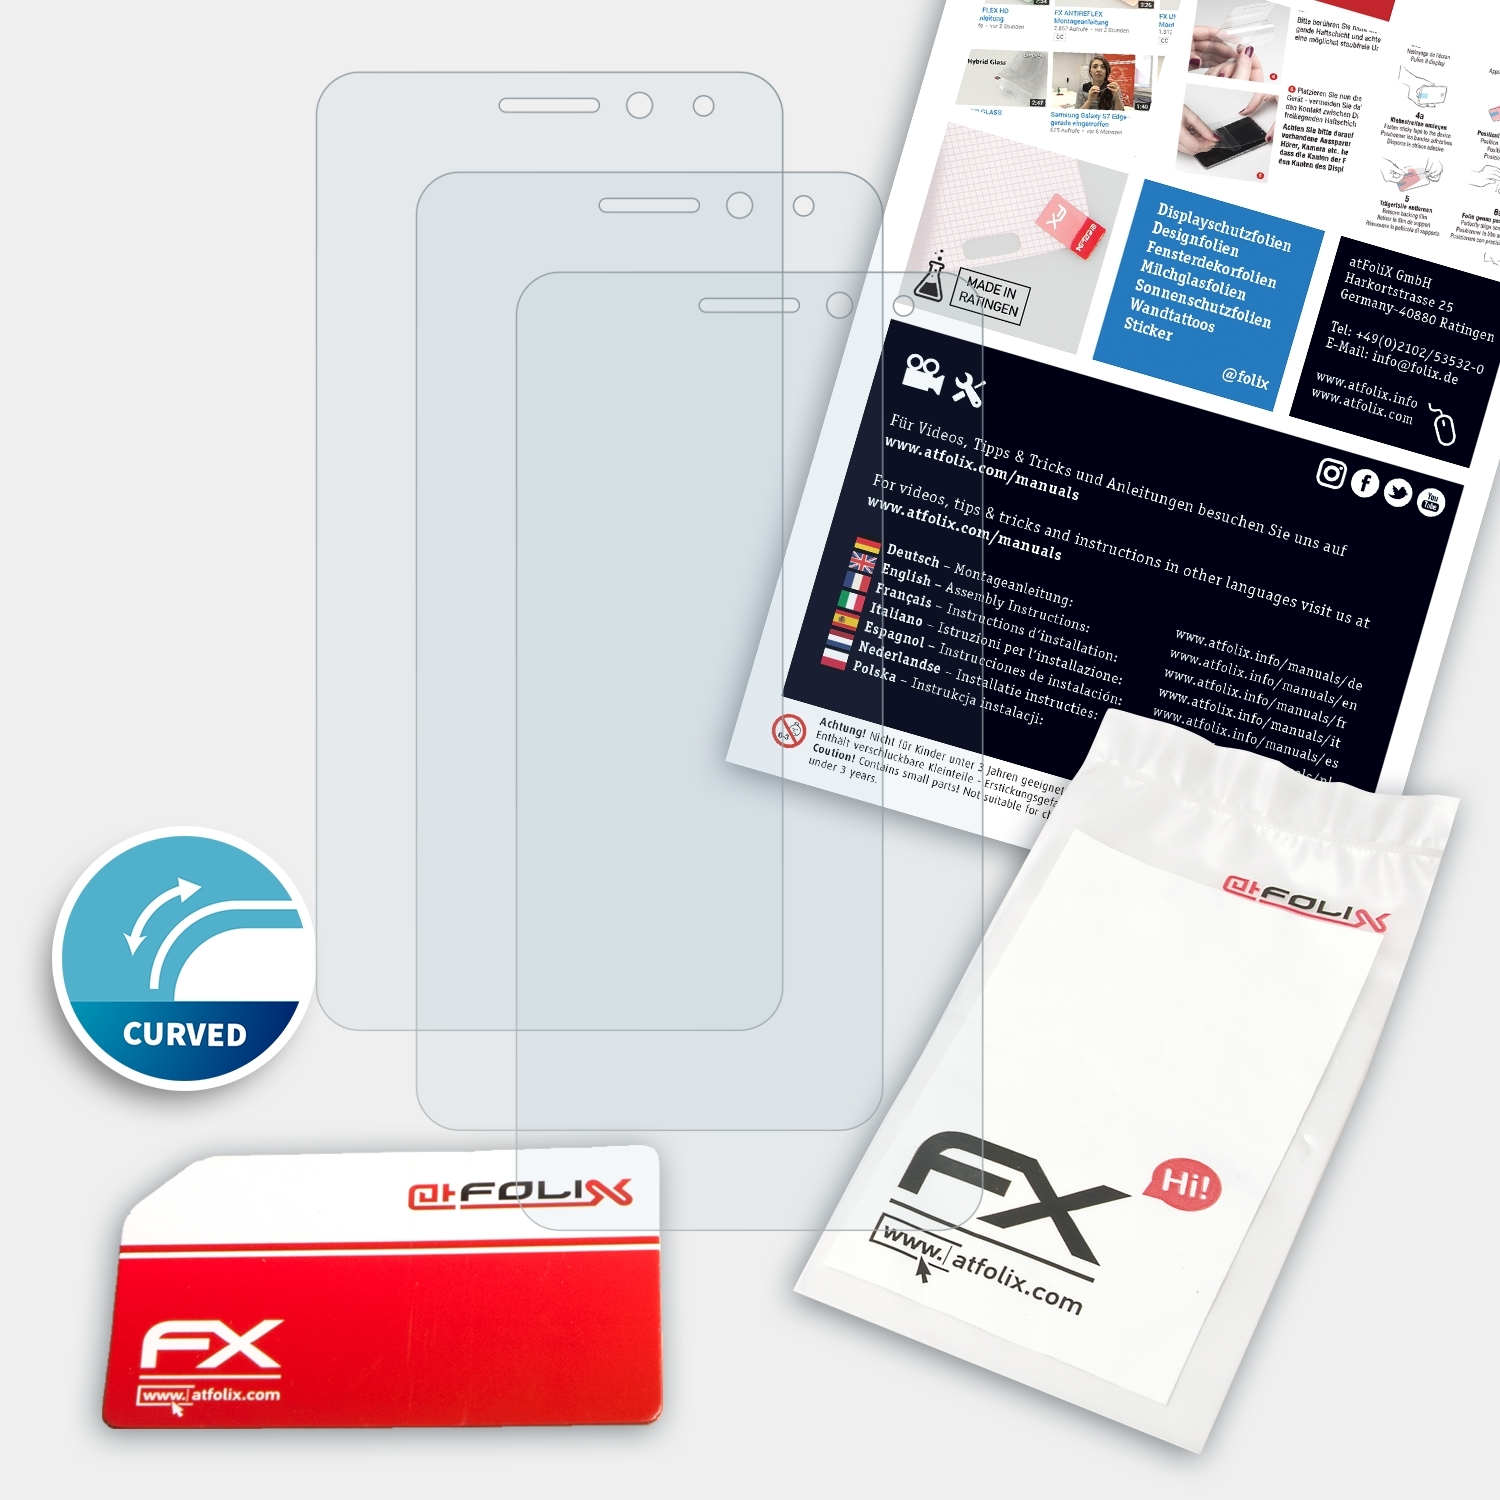 ATFOLIX 3x FX-ActiFleX Displayschutz(für General-Mobile GM 5 Plus)